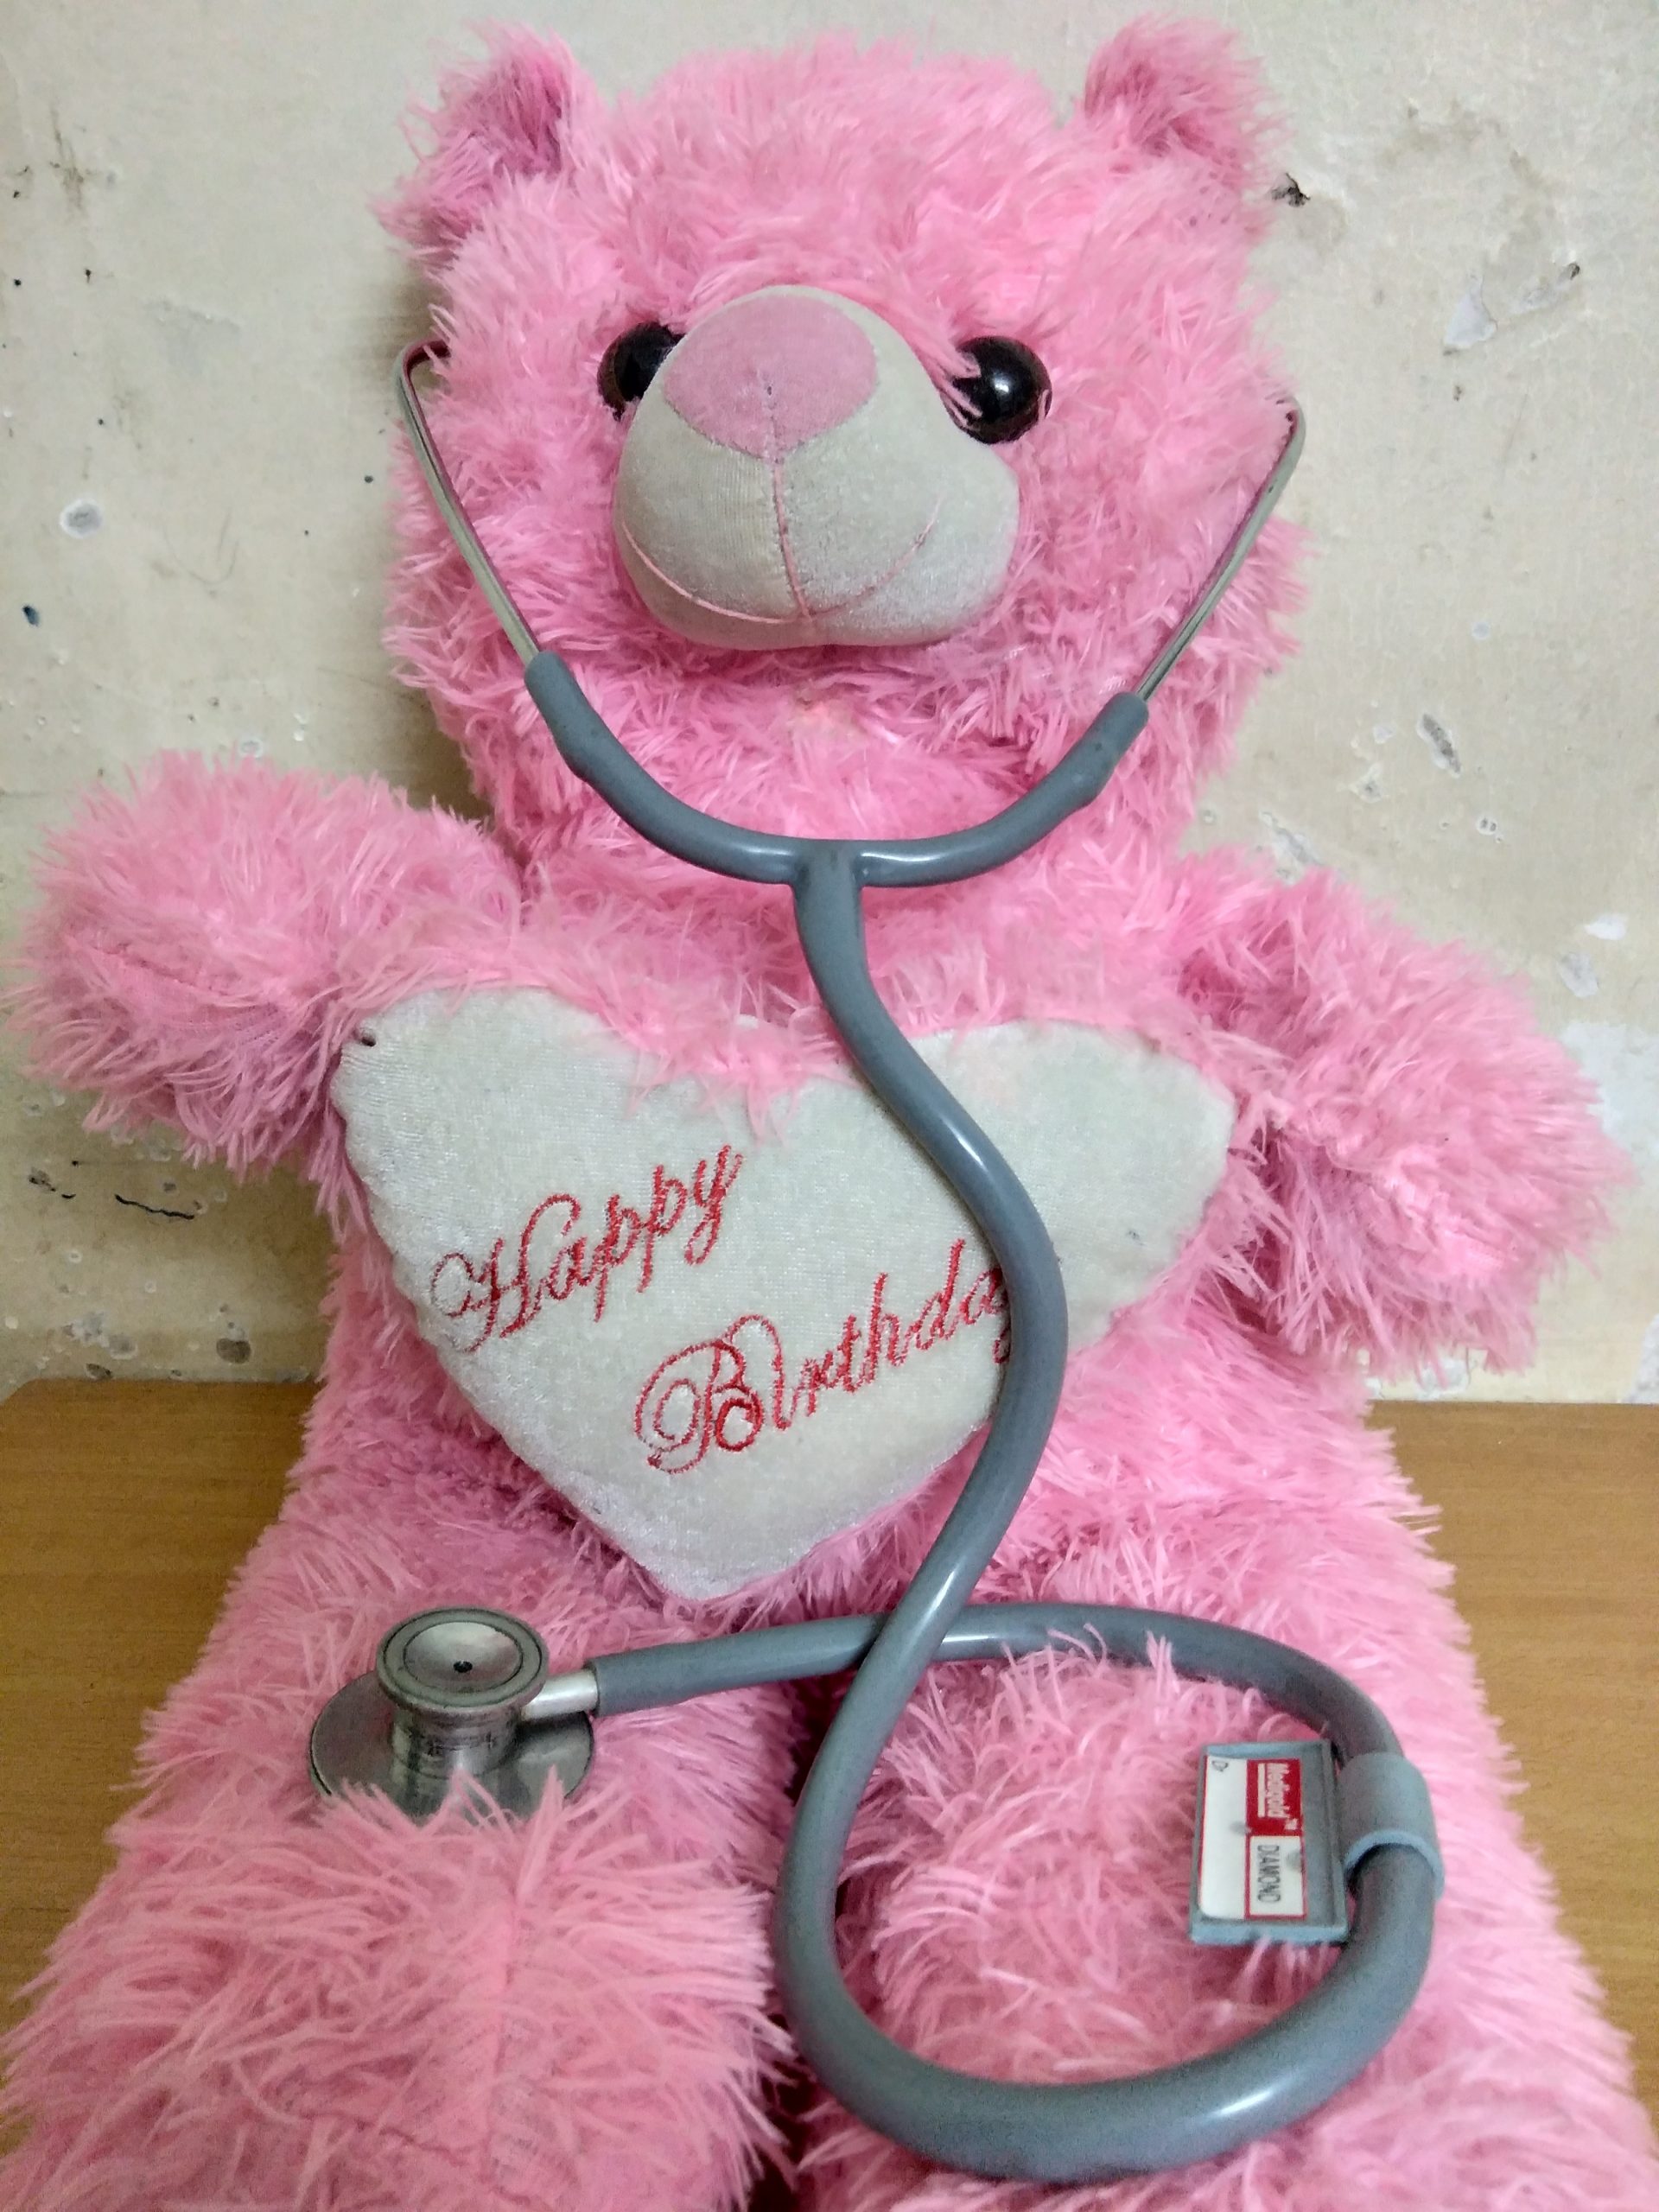 A teddy bear with stethoscope